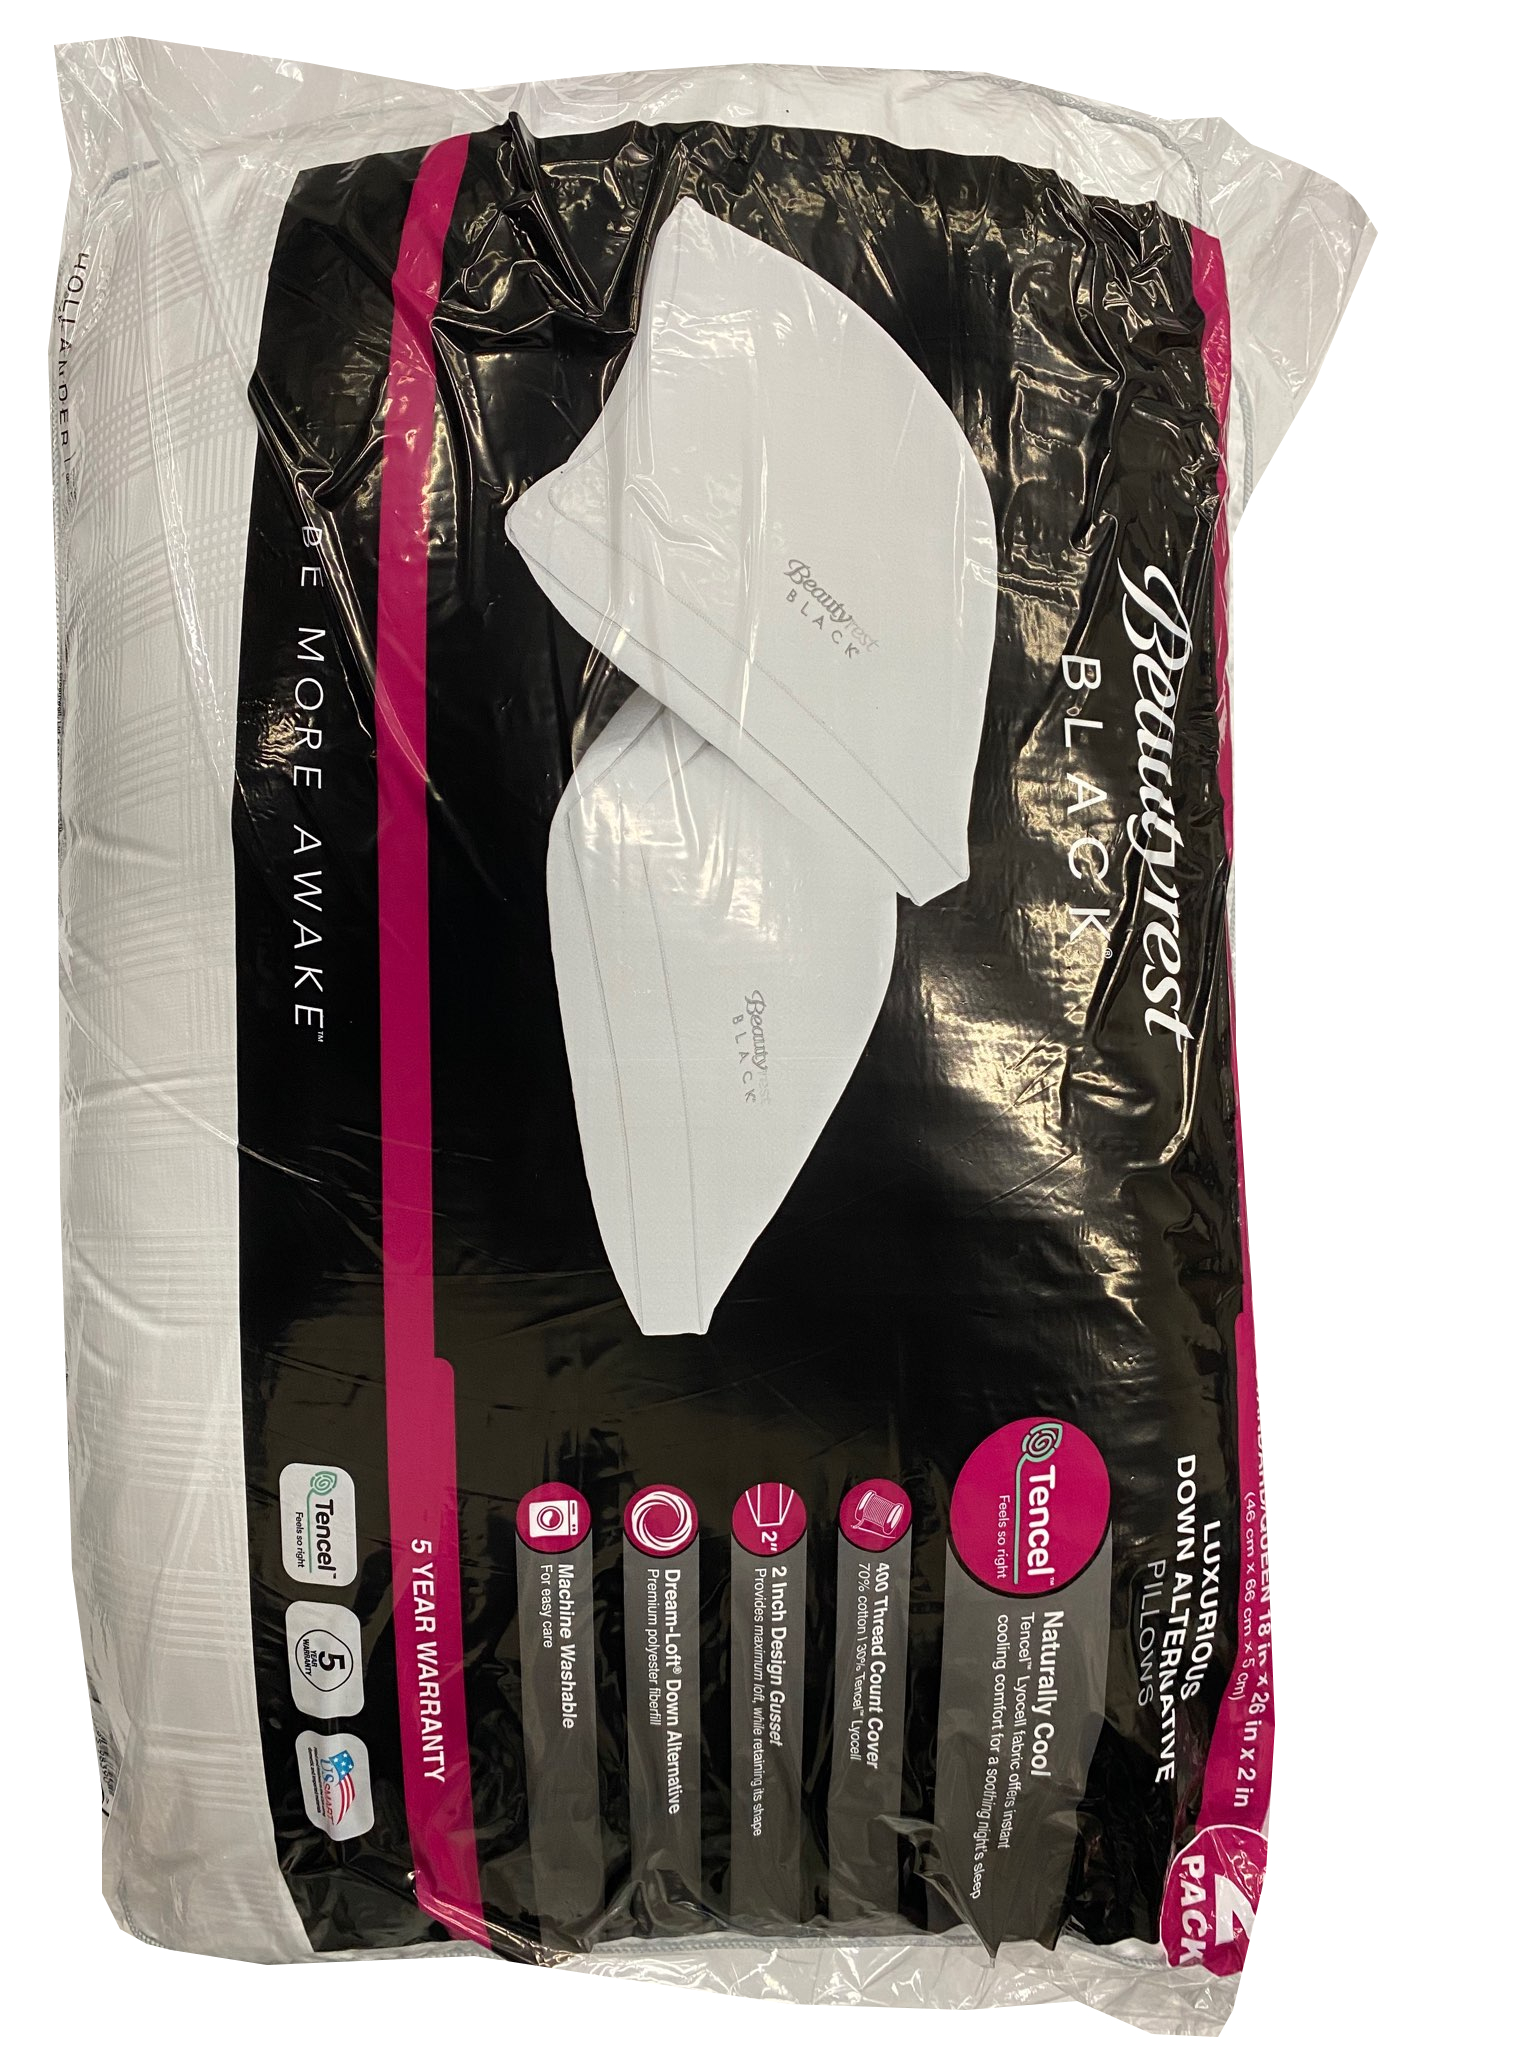 Beautyrest Black Pillows, 2-Pack Standard Queen - Walmart.com